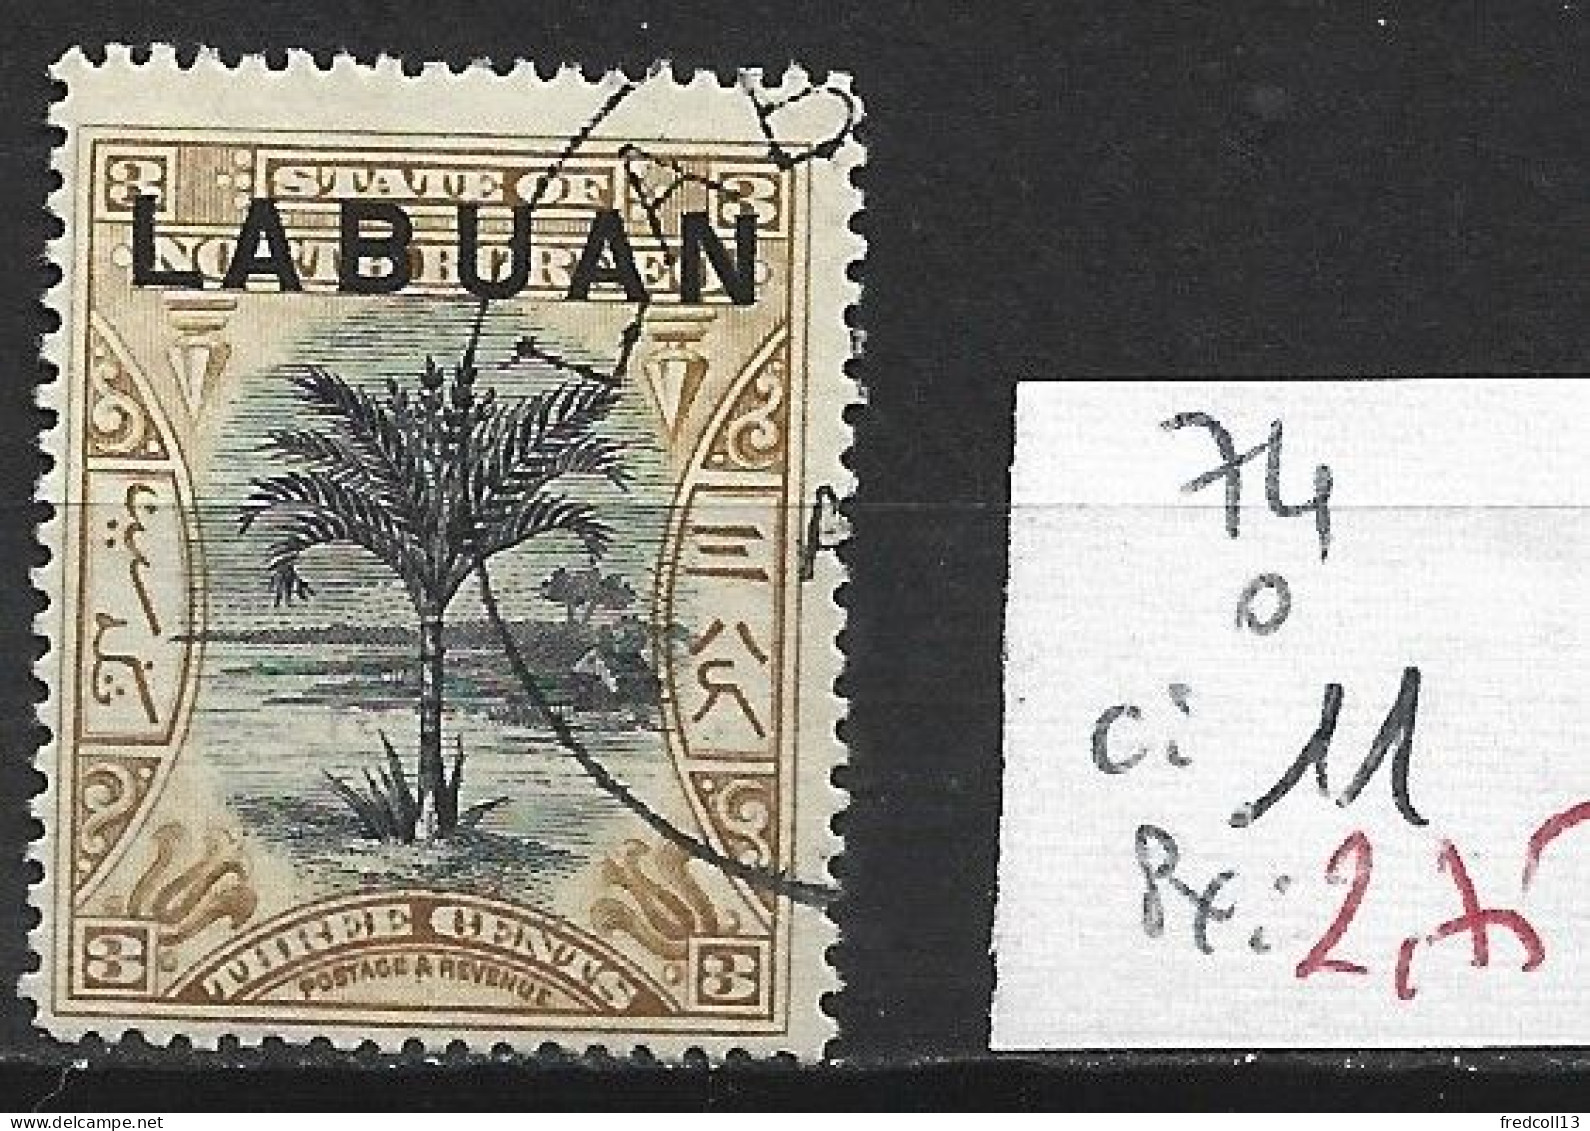 LABUAN 74 Oblitéré Côte 11 € - North Borneo (...-1963)